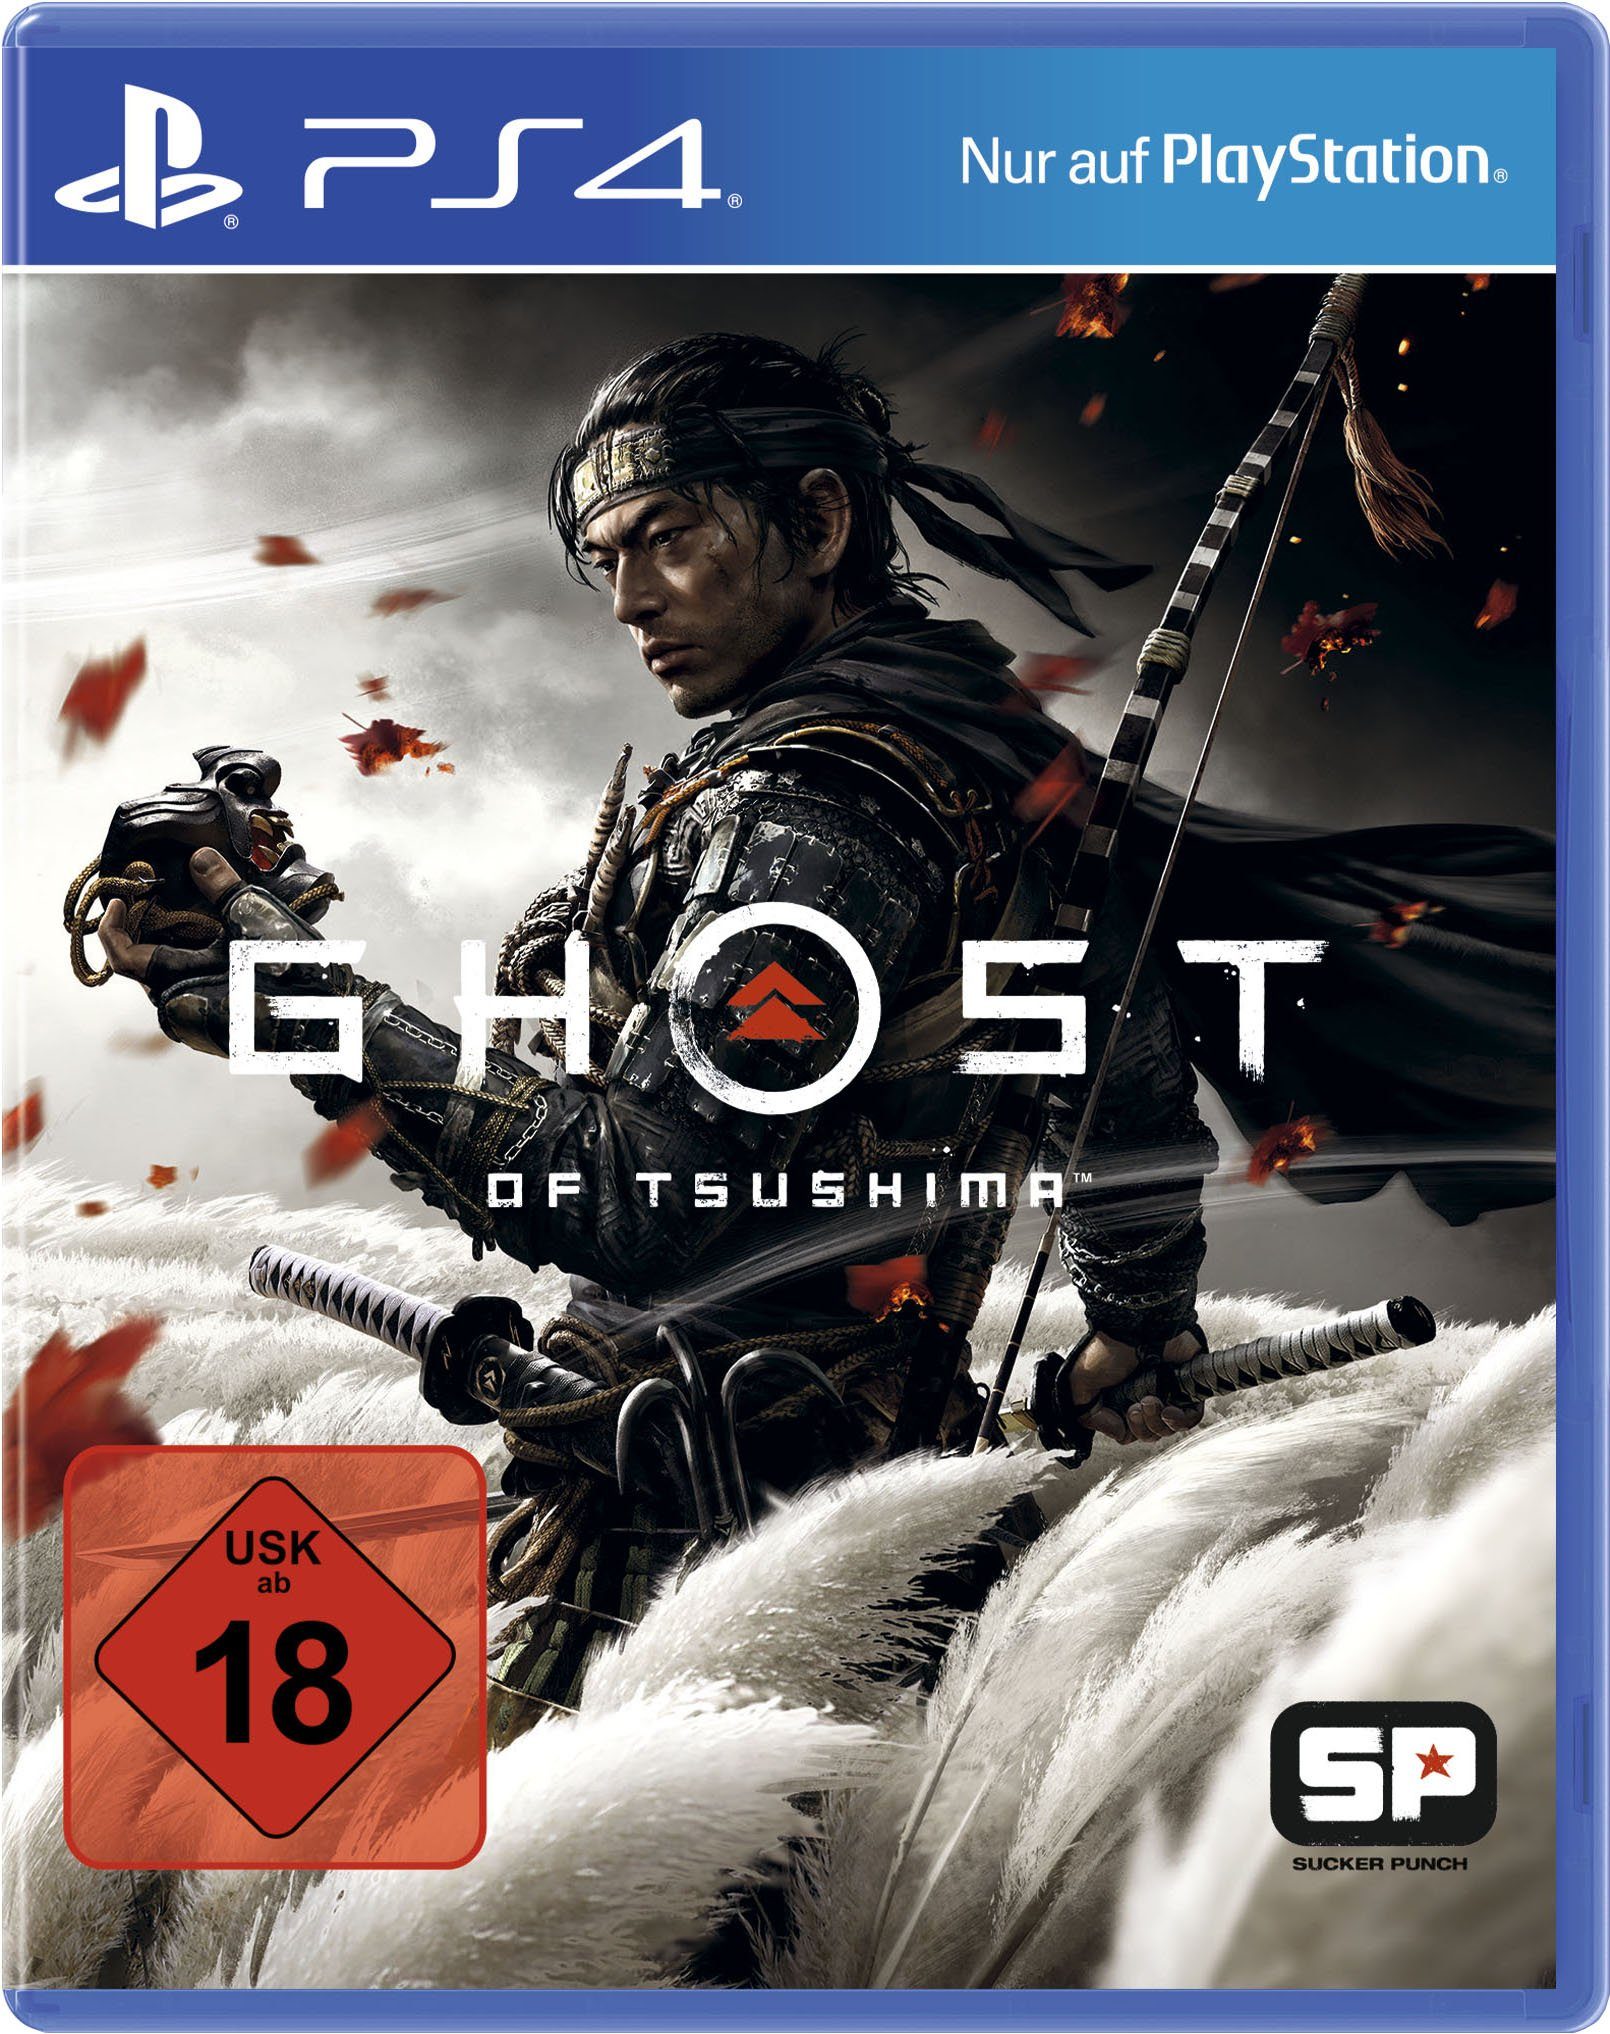 PlayStation 4 of Tsushima Ghost